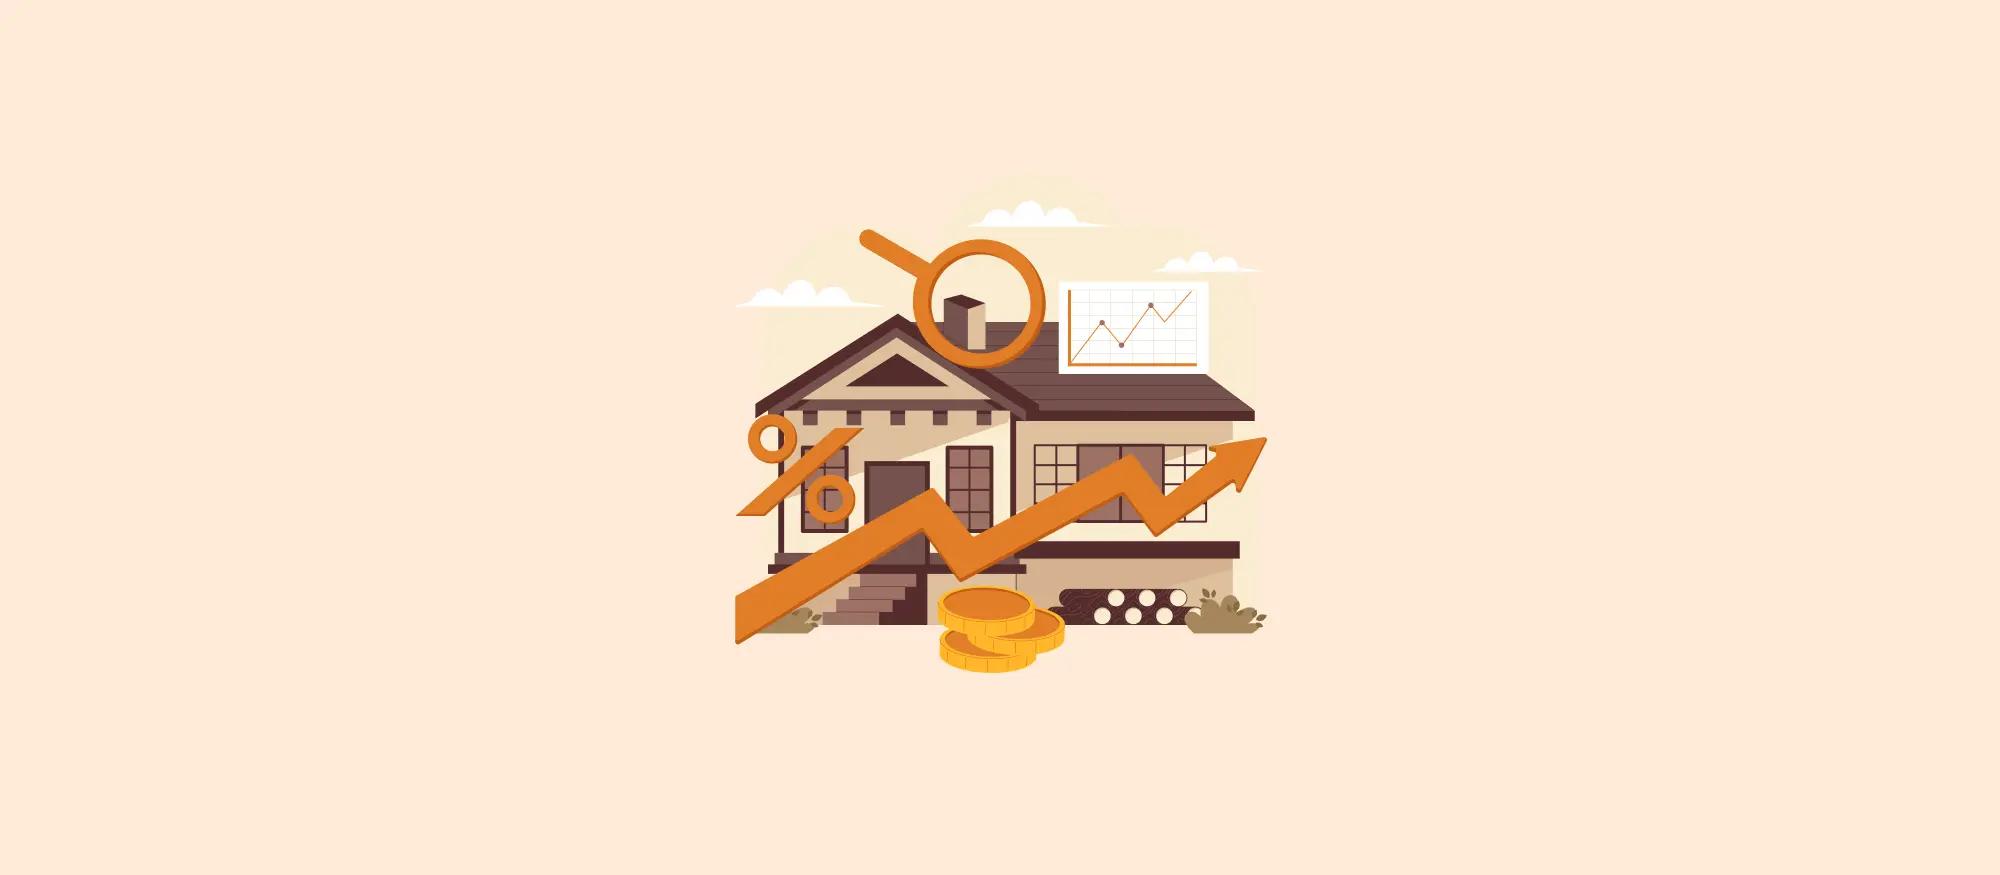 Especulação imobiliária: o que a imobiliária pode fazer